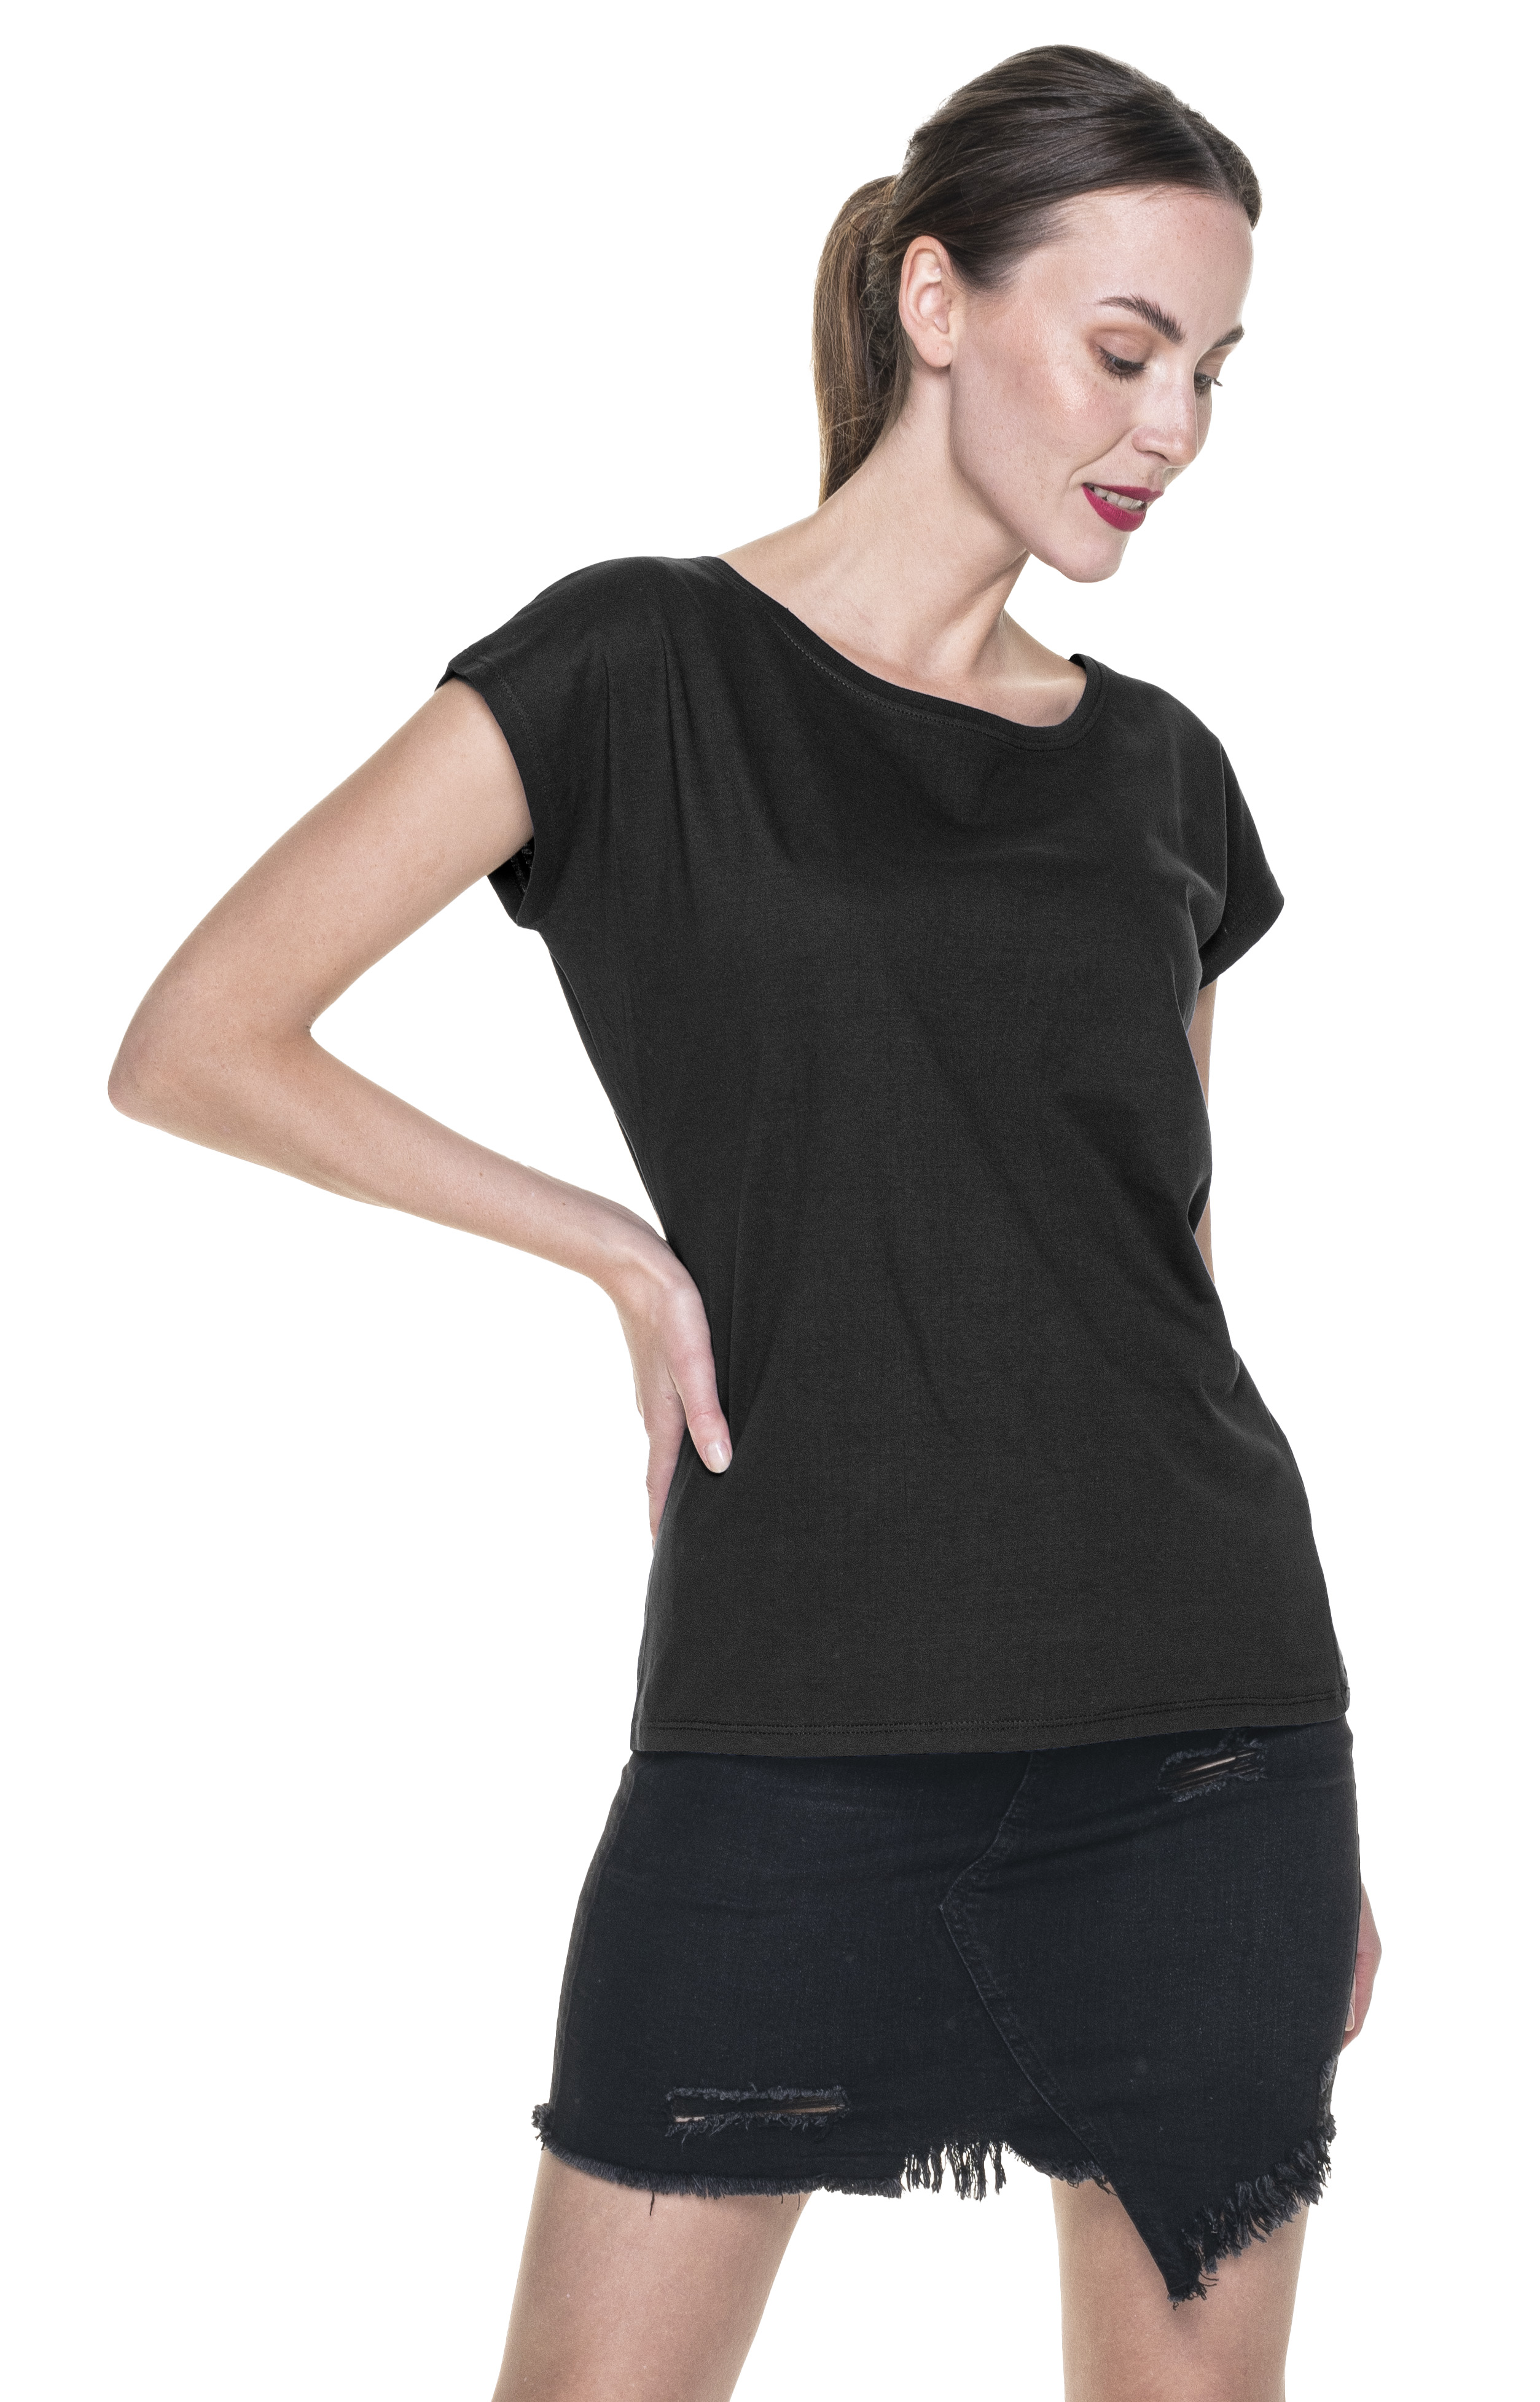 Koszulka damska Geffer 250 - czarna